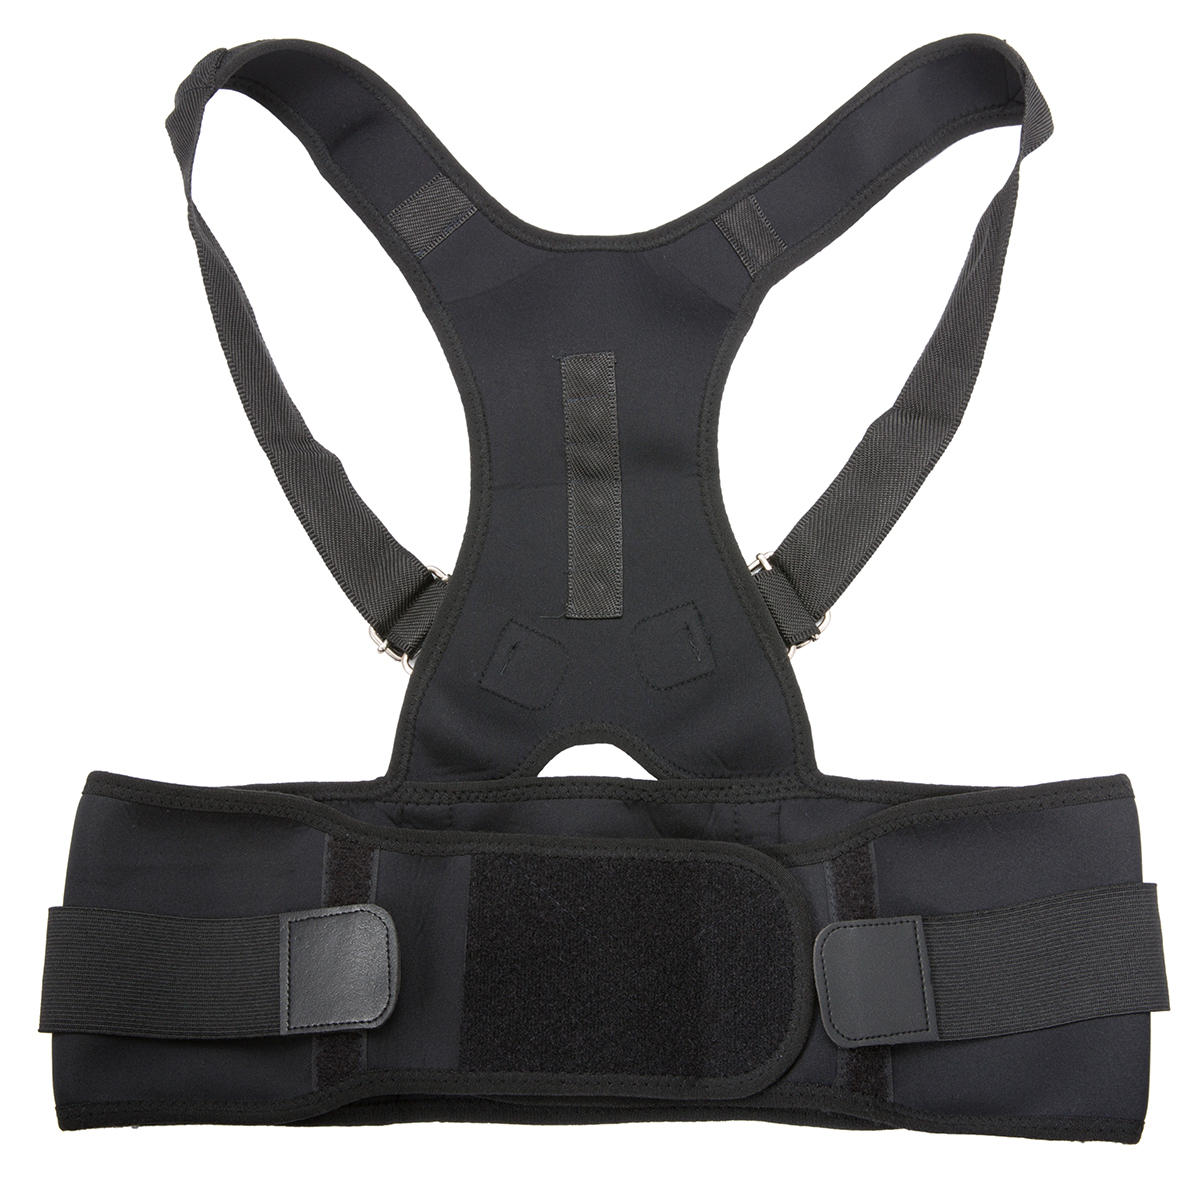 Adjustable Back Support Shoulder Posture Pain Relief Correctorbelt Strap Lumbar Spine Support Back Protector